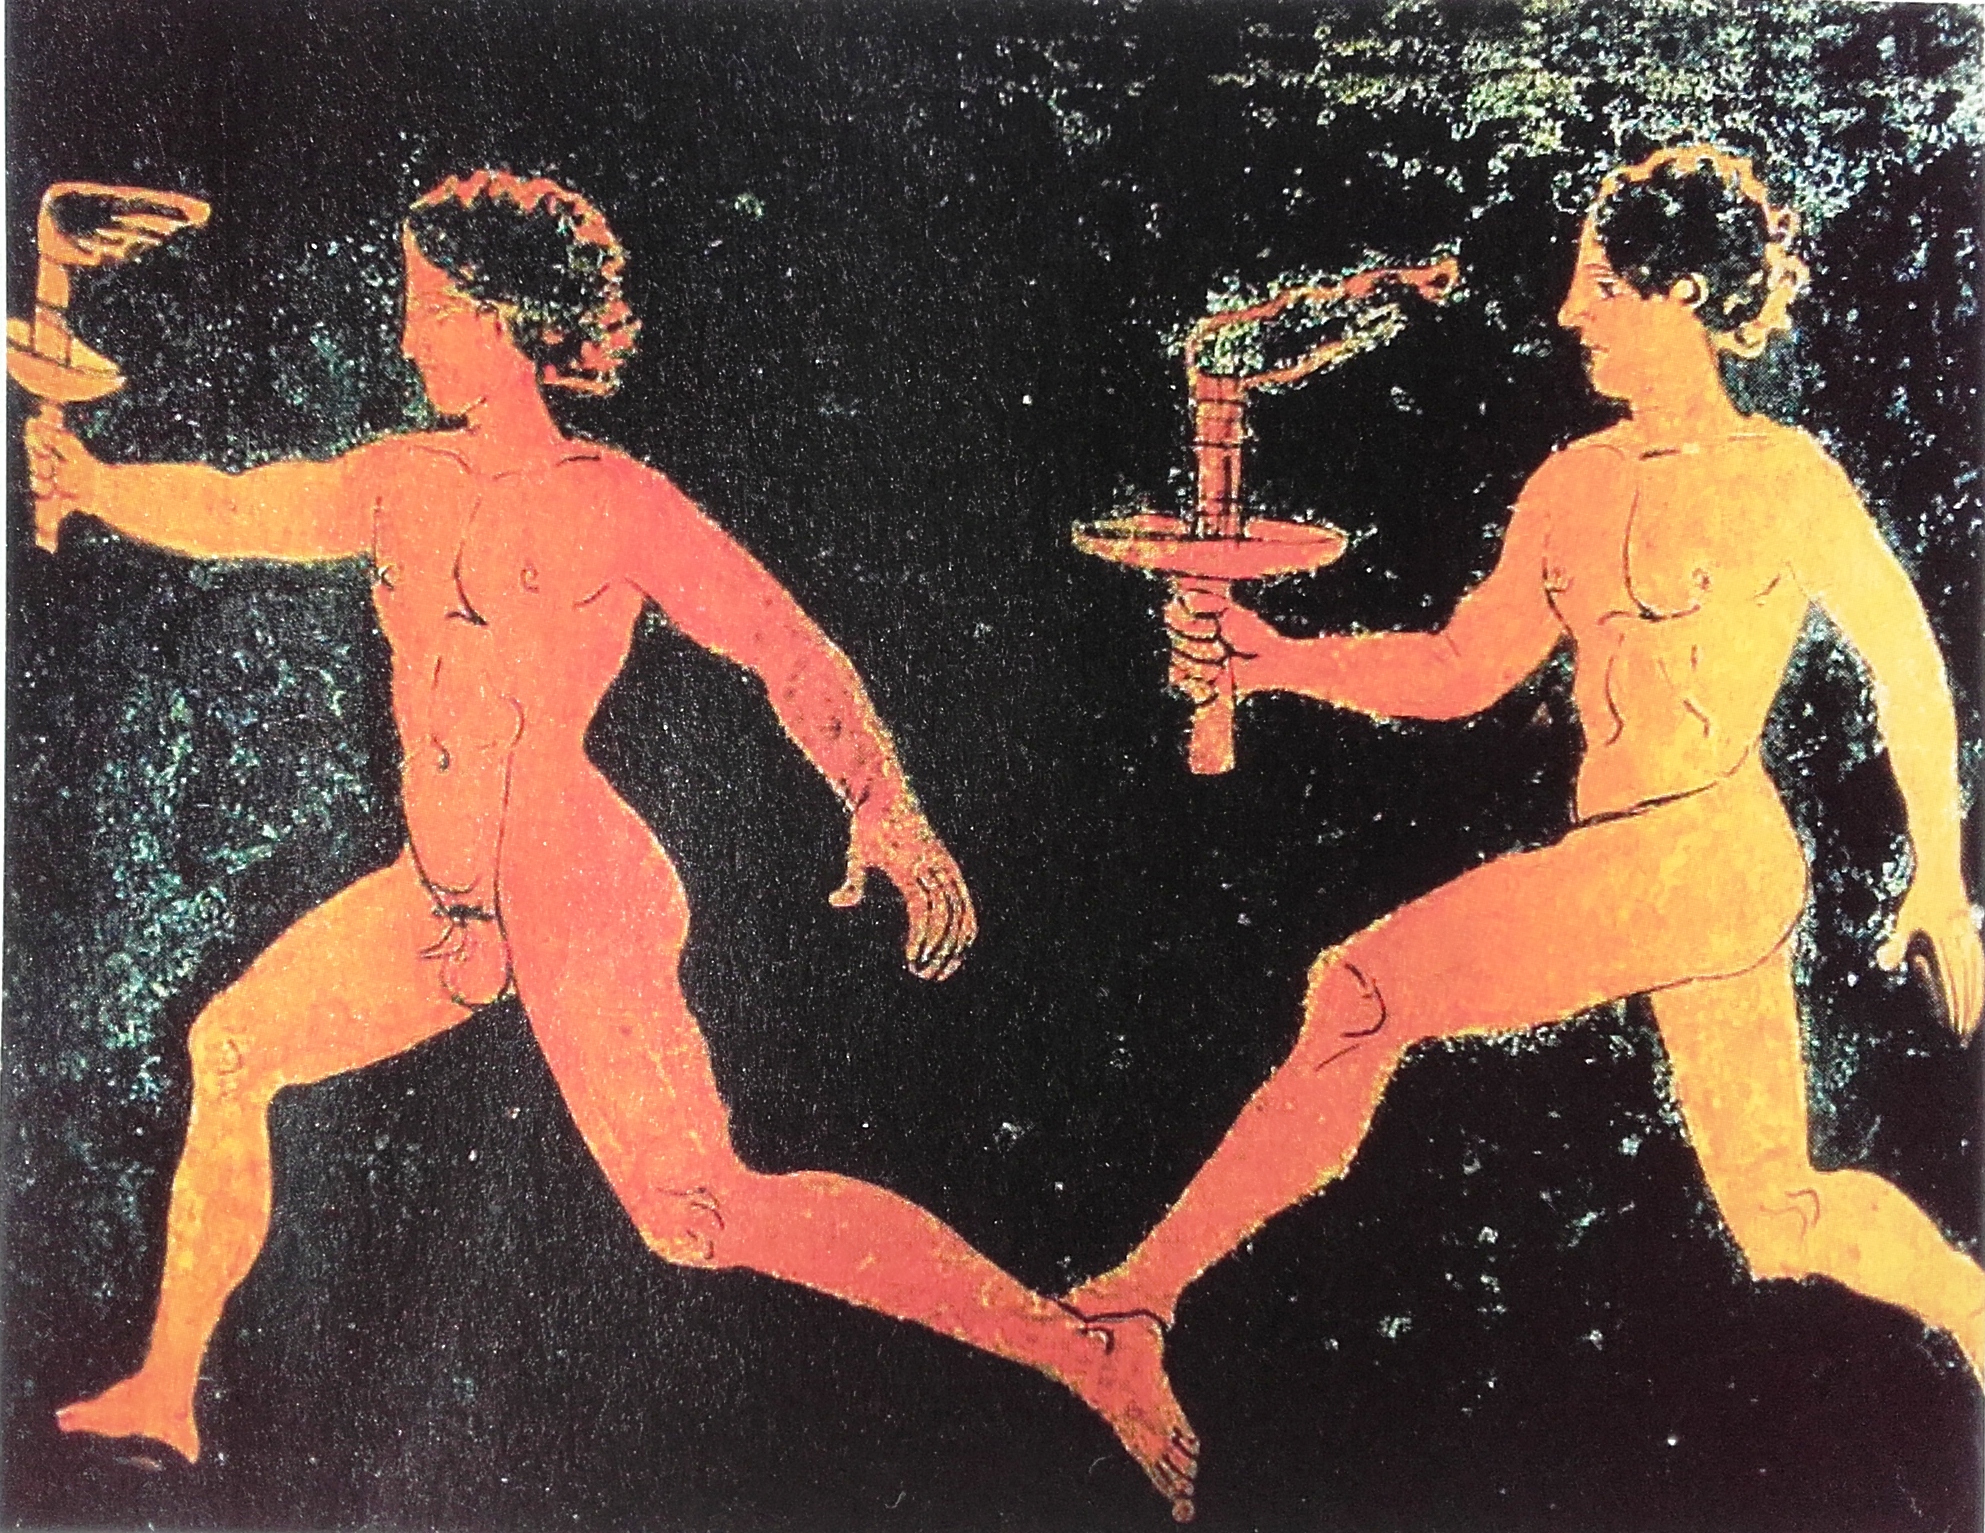 η ιστορία της αφής της ολυμπιακής φλόγας: καθιερώθηκε τον 8ο π.χ. αιώνα στην αρχαία ολυμπία με σκοπό την επιβολή της ειρήνης